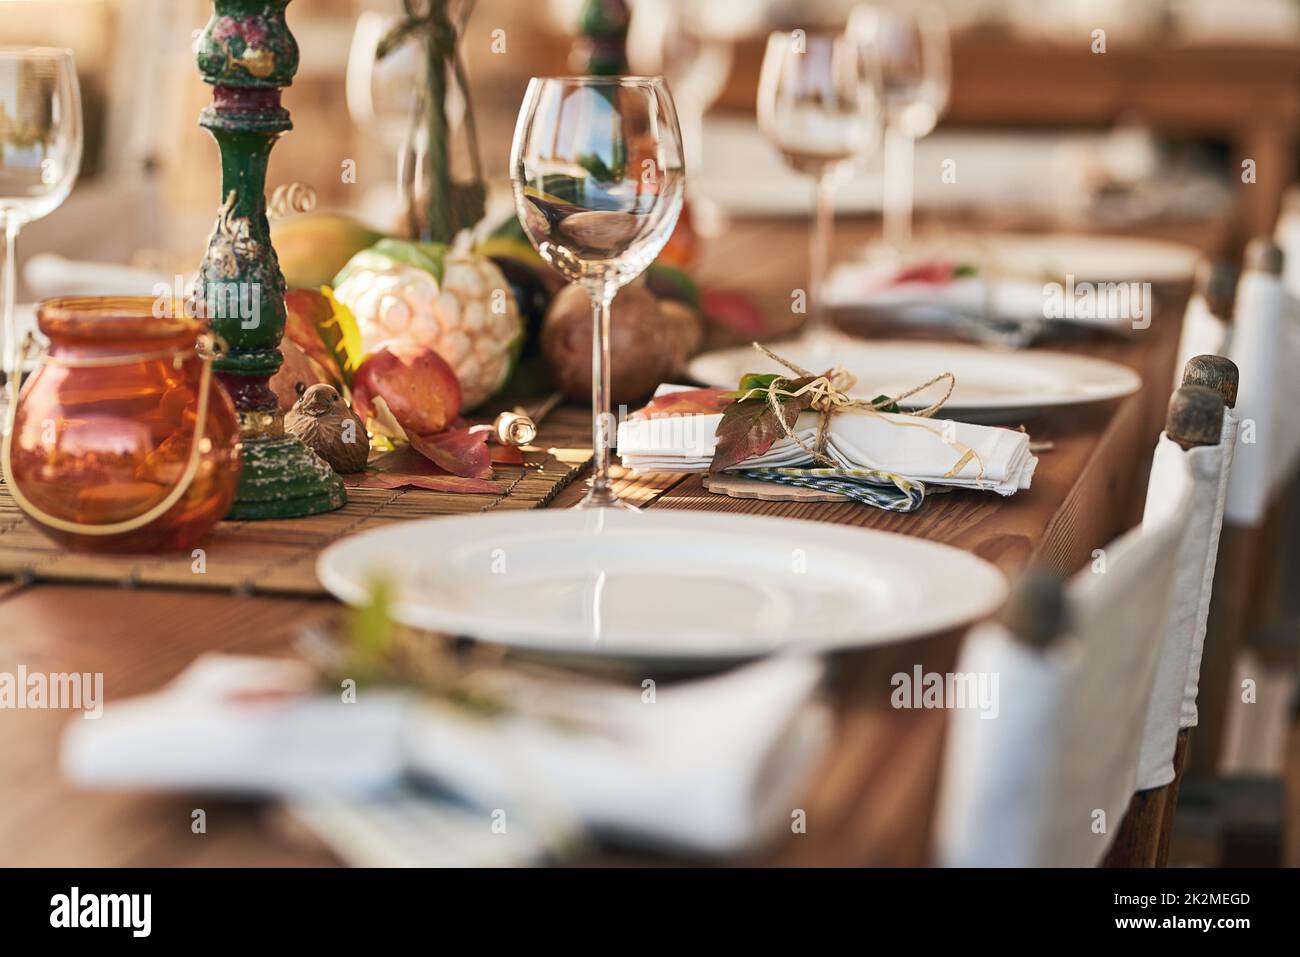 Fertig zum Mittagessen. Aufnahme eines schön gedeckten Essentisch mit verschiedenen Tellern und Gläsern darauf. Stockfoto